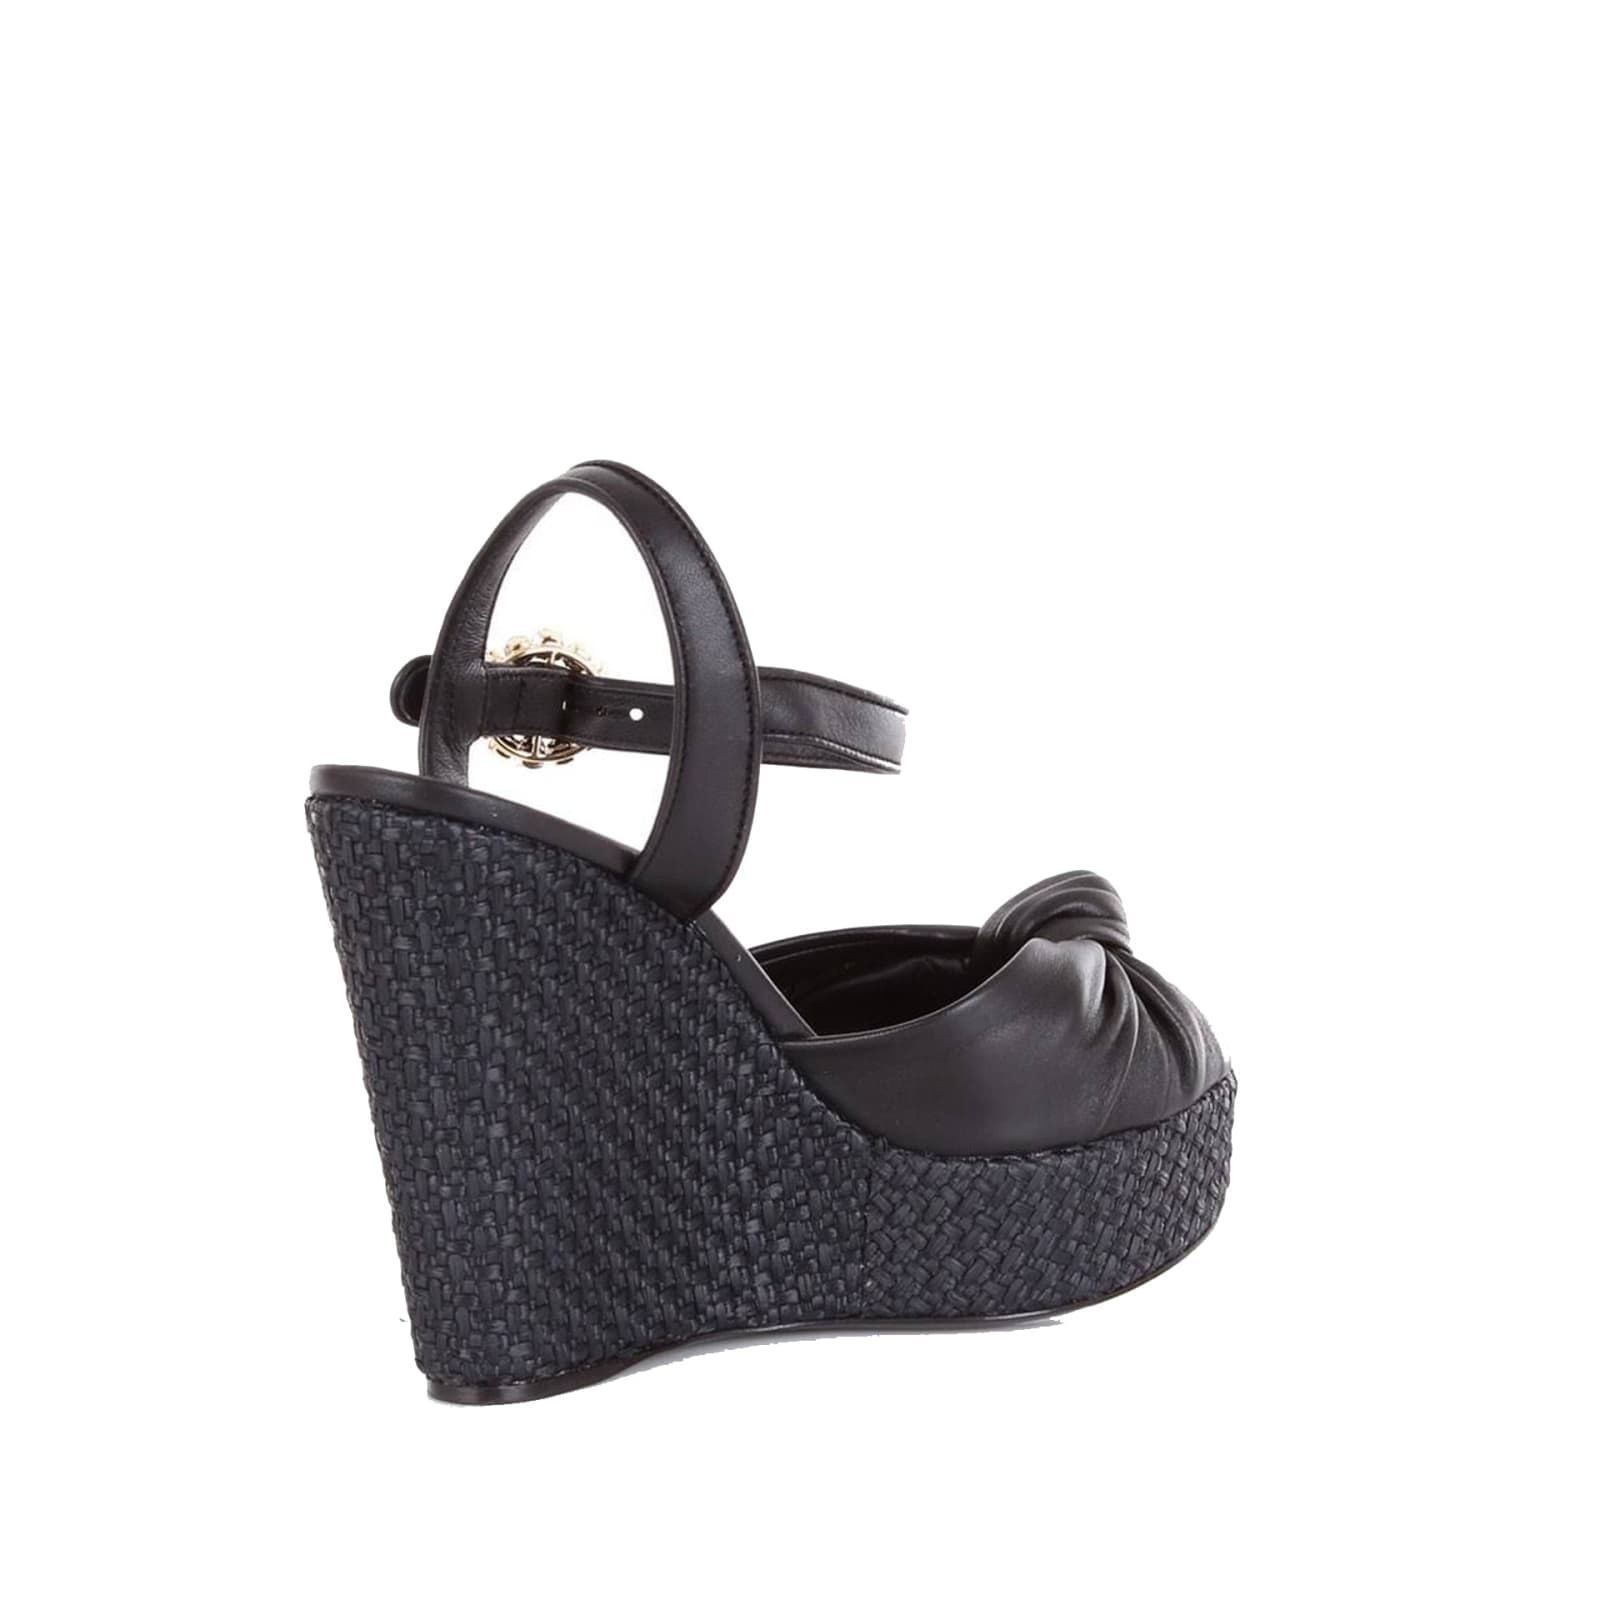 Shop Dolce & Gabbana Wedge Sandals In Black